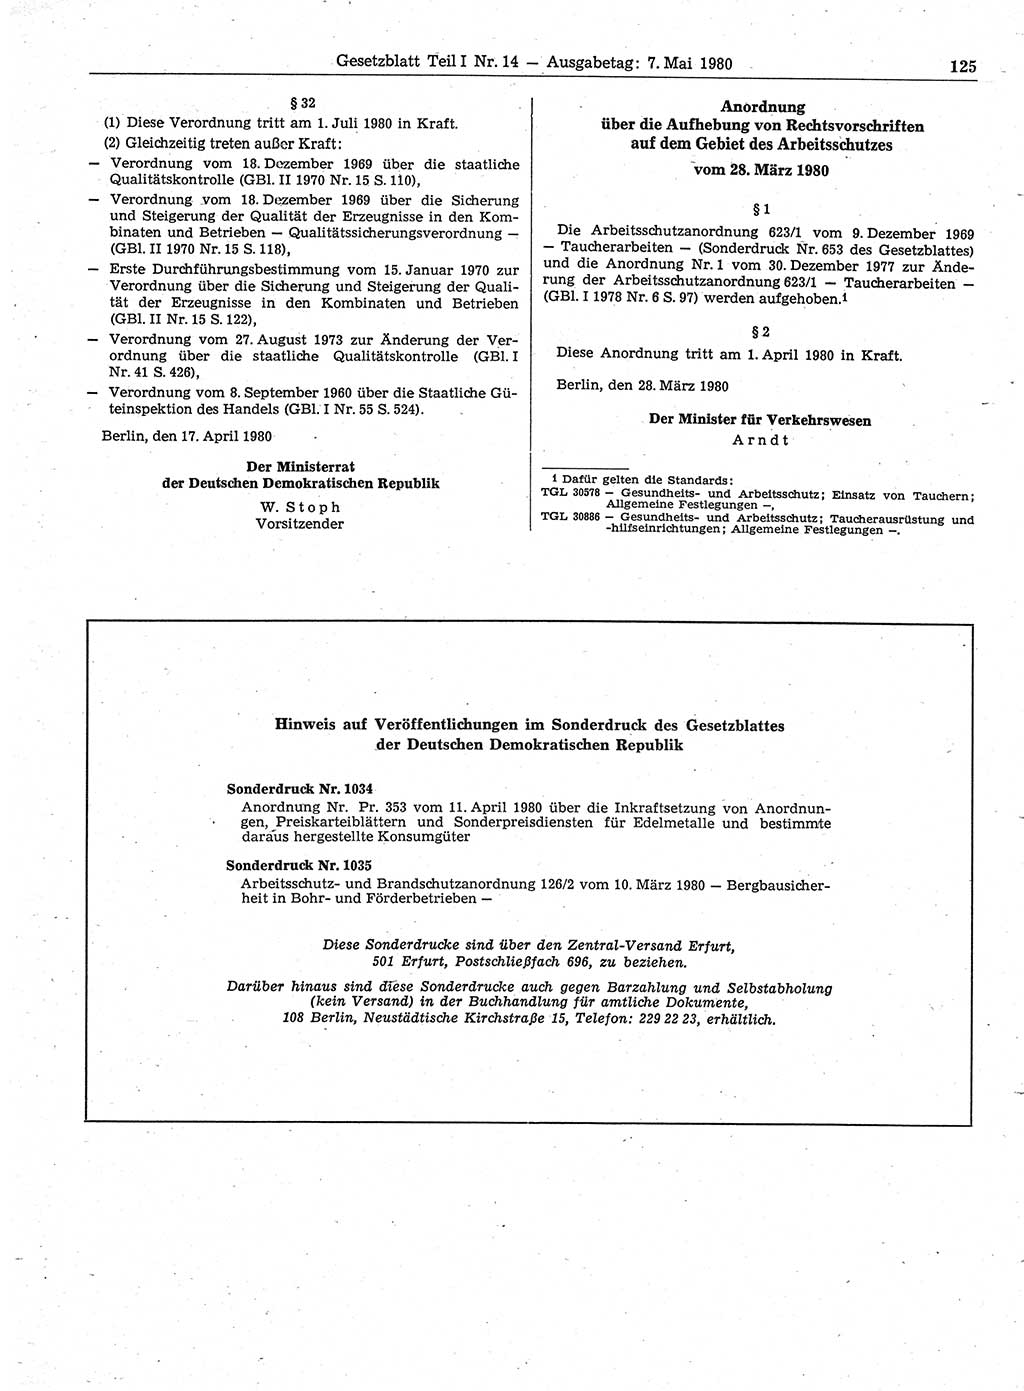 Gesetzblatt (GBl.) der Deutschen Demokratischen Republik (DDR) Teil Ⅰ 1980, Seite 125 (GBl. DDR Ⅰ 1980, S. 125)